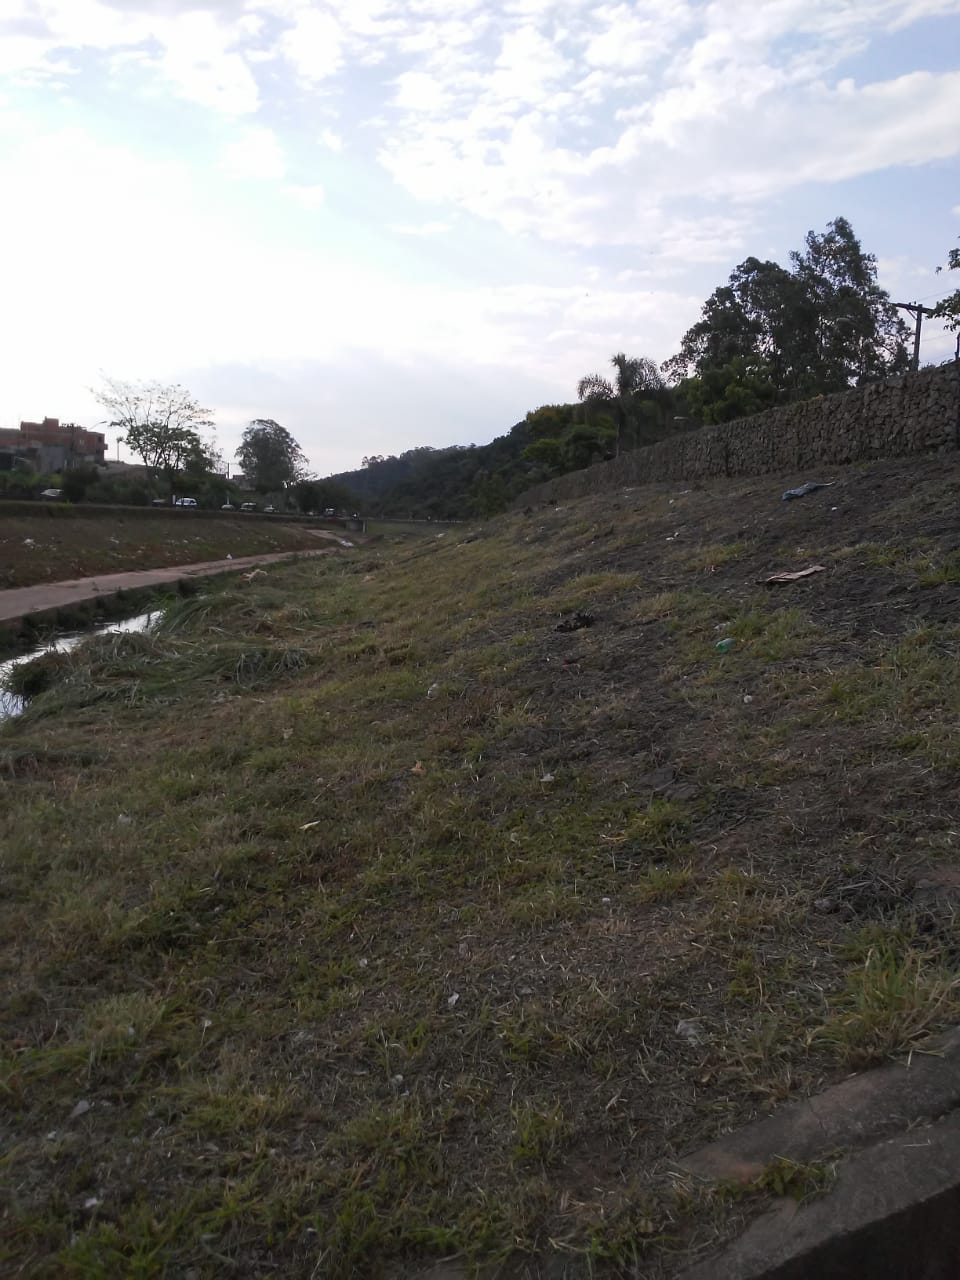 Margem do rio Aricanduva visível, com o mato roçado e detritos recolhidos